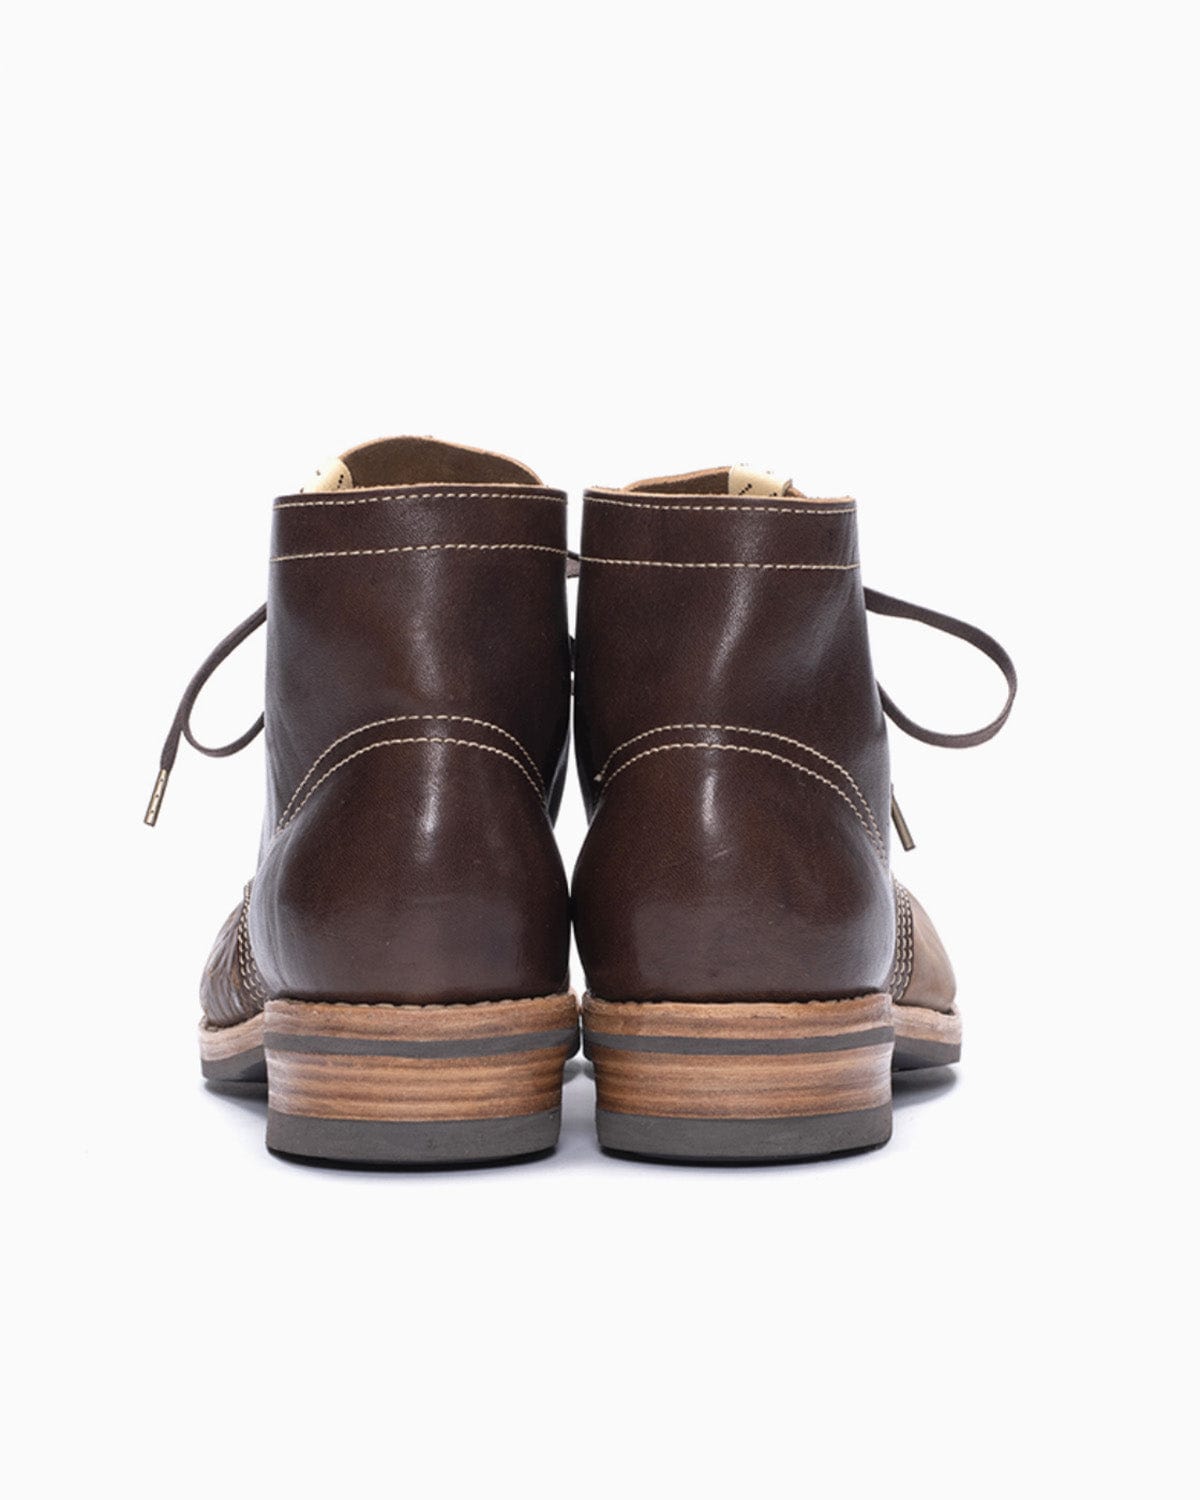 Visvim Brigadier Boots Folk Dark Brown Shoes Leather Men